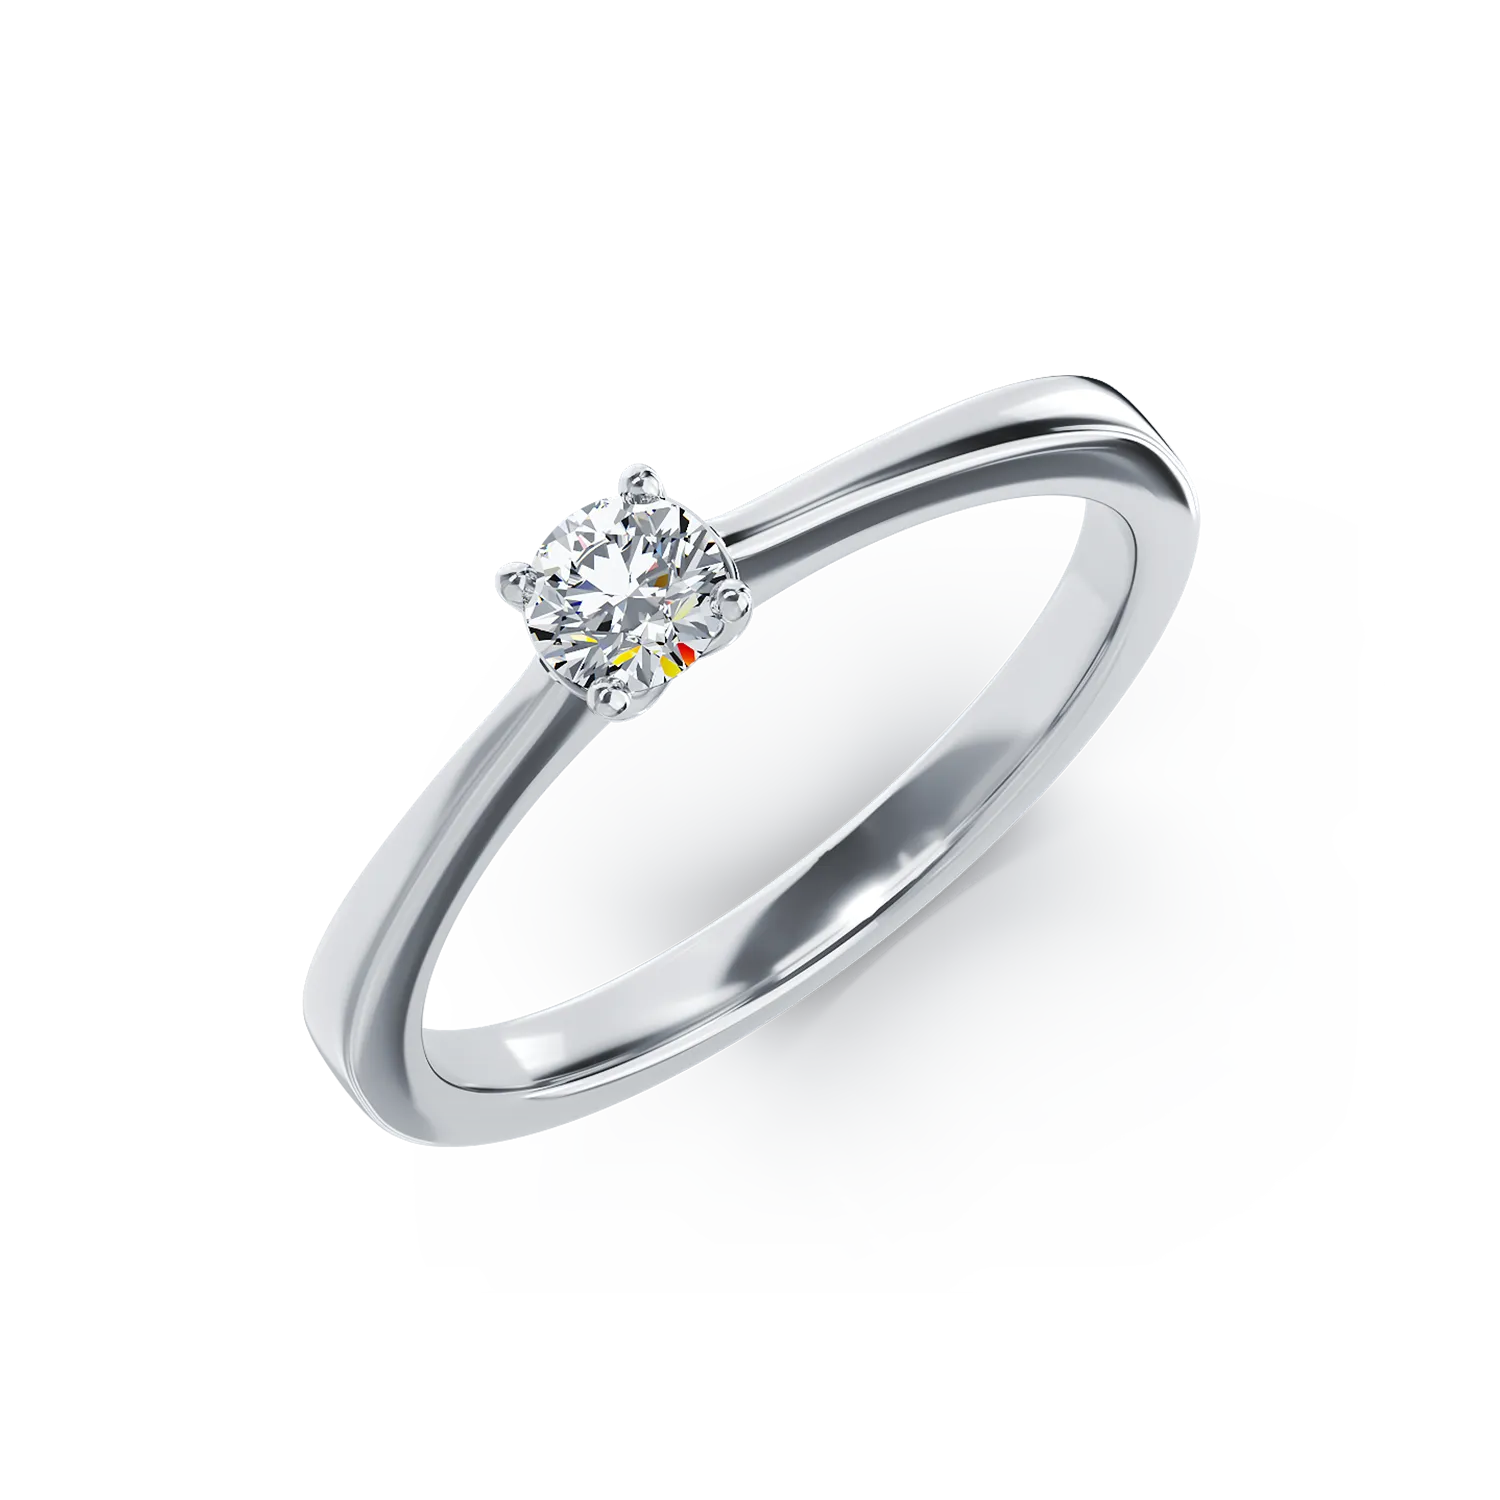 Inel de logodna din aur alb de 18K cu un diamant solitaire de 0.295ct